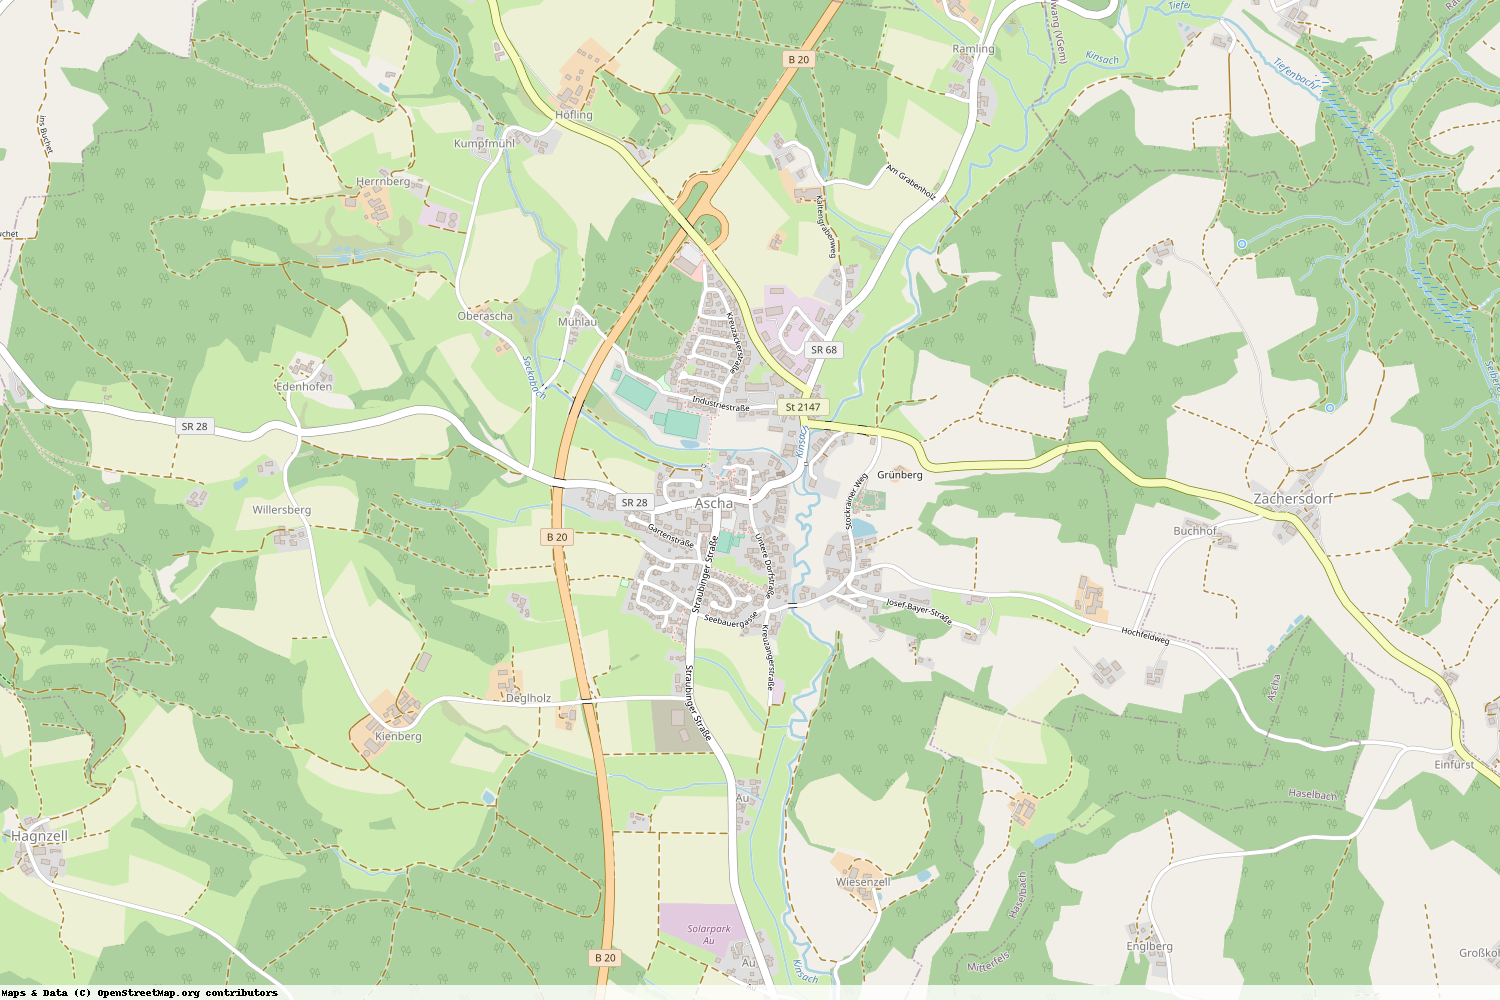 Ist gerade Stromausfall in Bayern - Straubing-Bogen - Ascha?